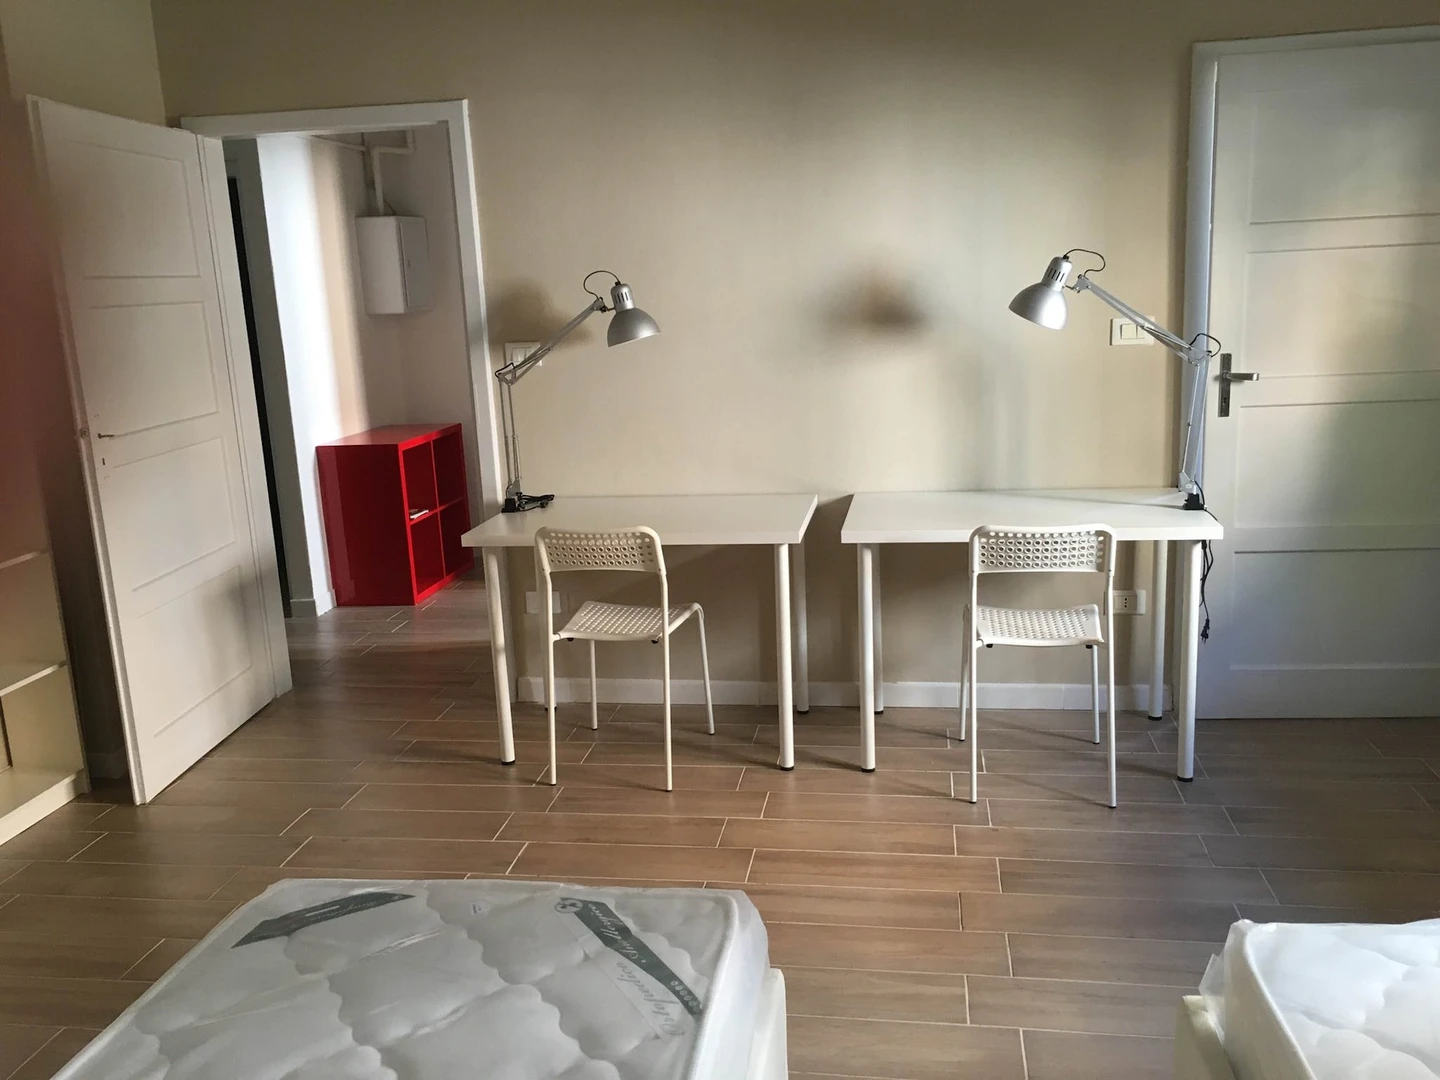 Luminosa stanza condivisa in affitto a Bologna